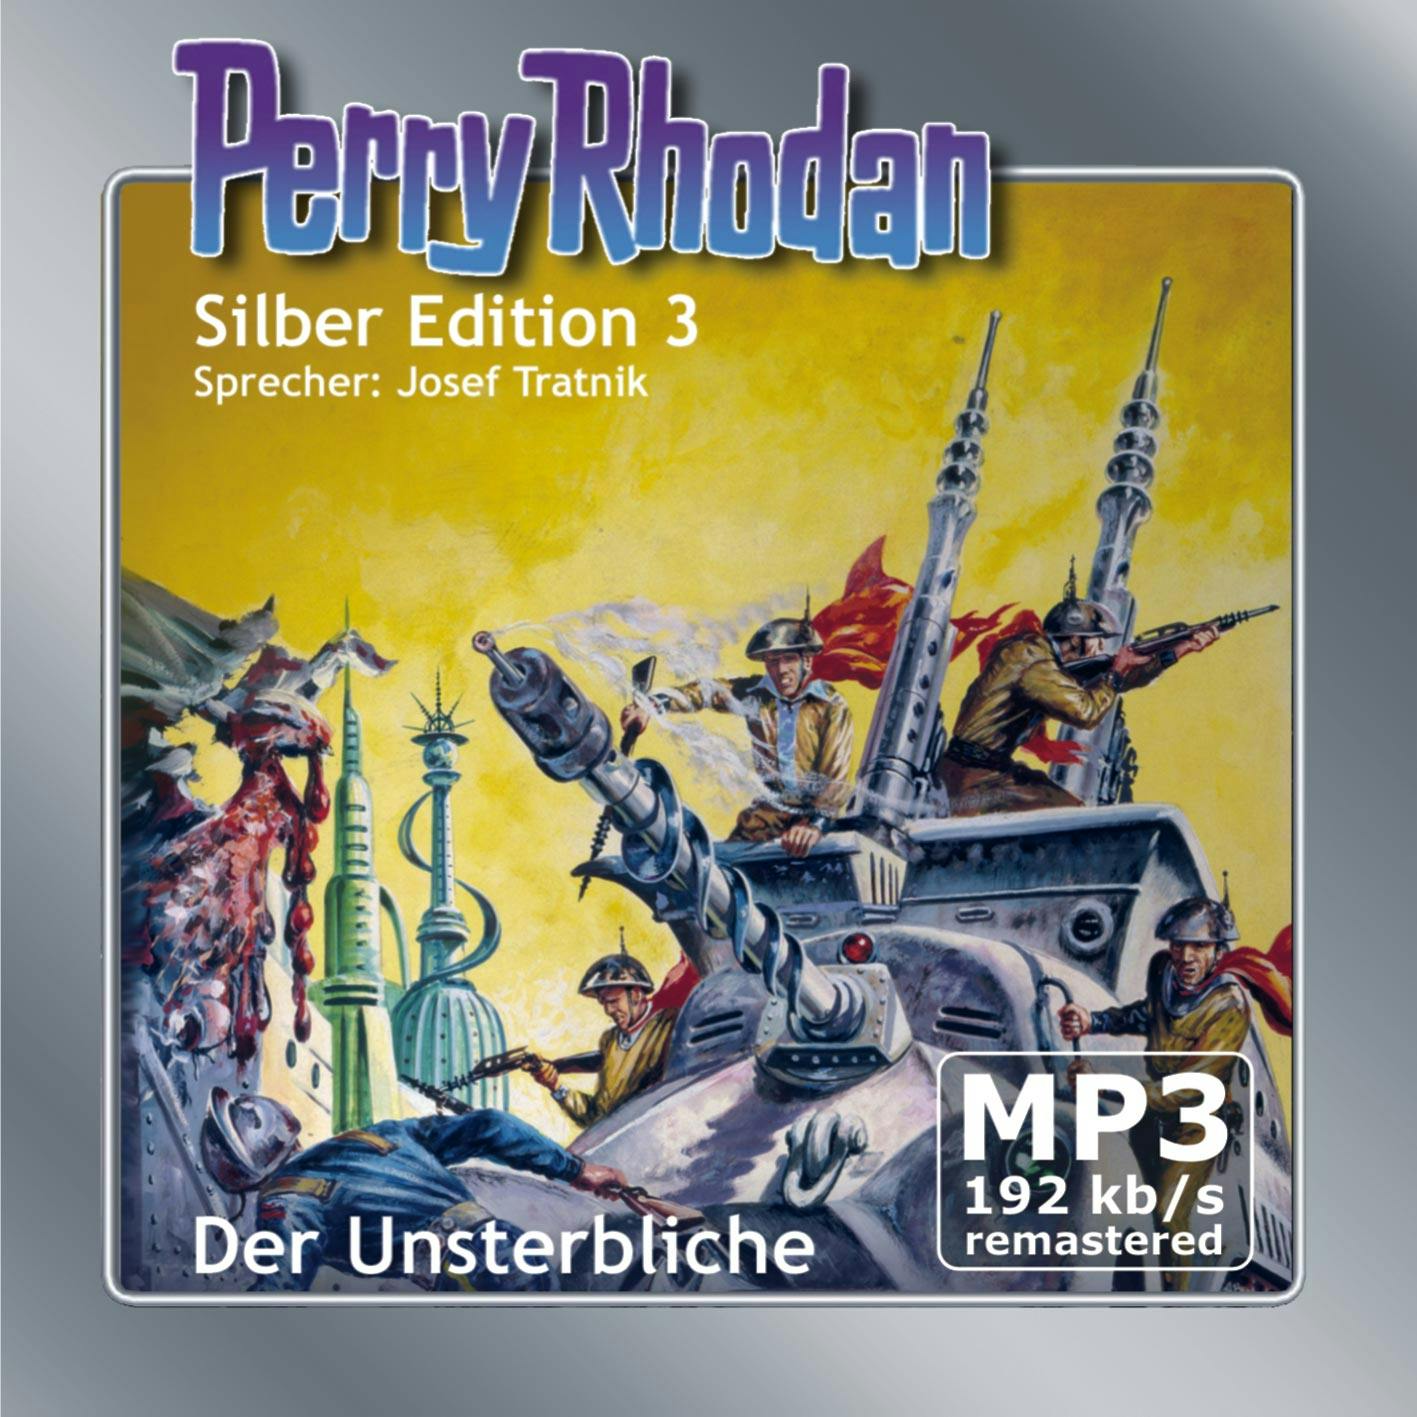 Perry Rhodan Silber Edition 03: Der Unsterbliche - Remastered: Perry Rhodan-Zyklus "Die Dritte Macht" - Clark Darlton, K.H. Scheer, Kurt Mahr